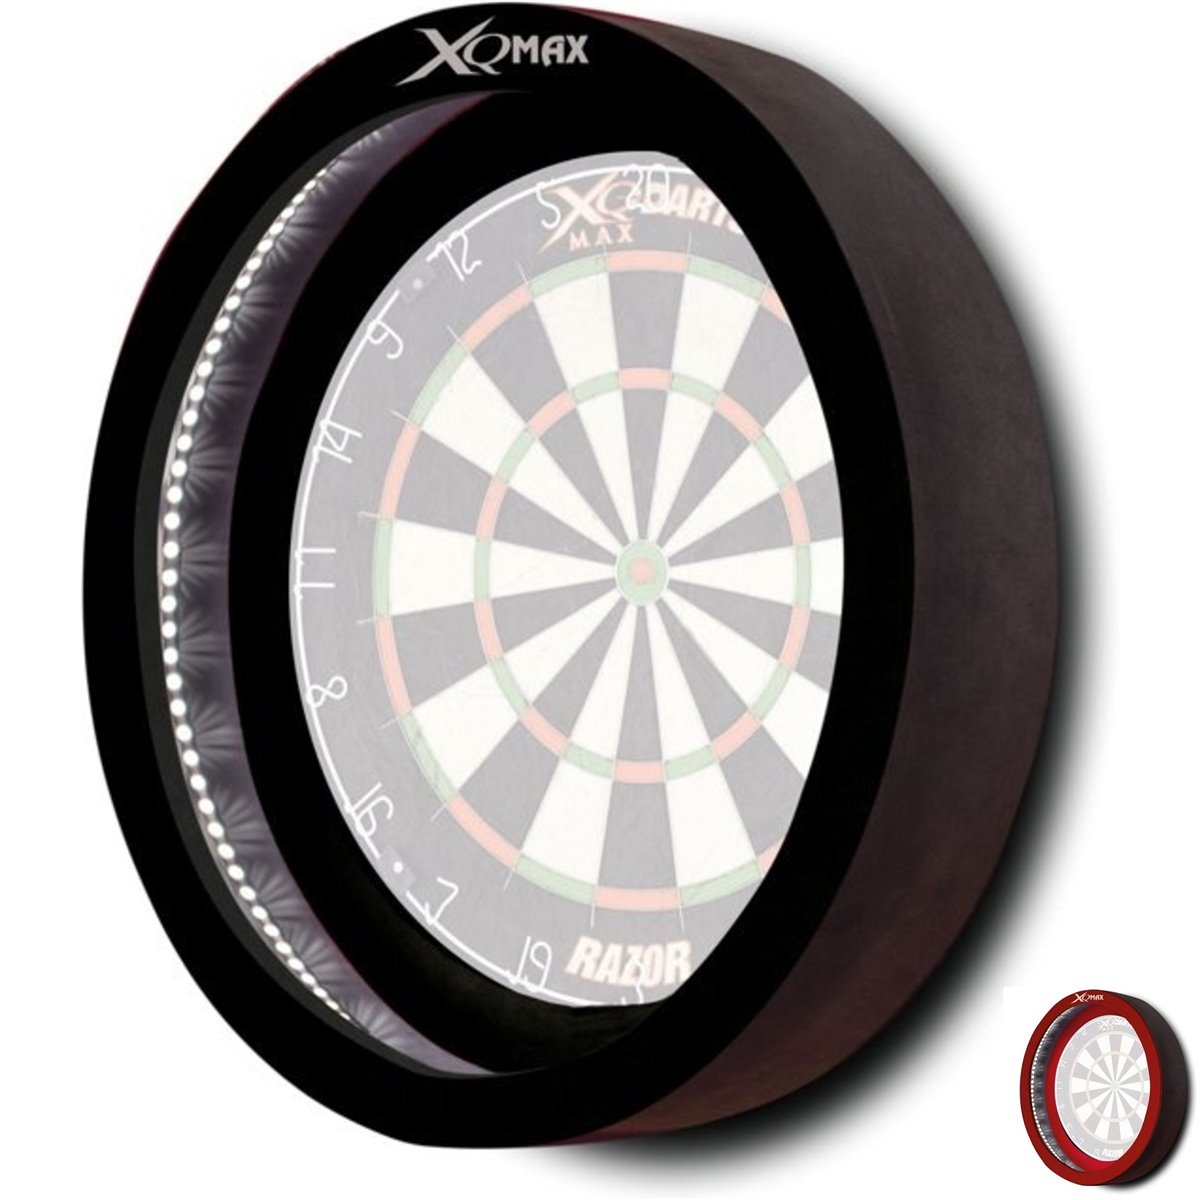 XQMAX LED Surround Lighting System für Dartboards Dartscheiben Boardzubehör